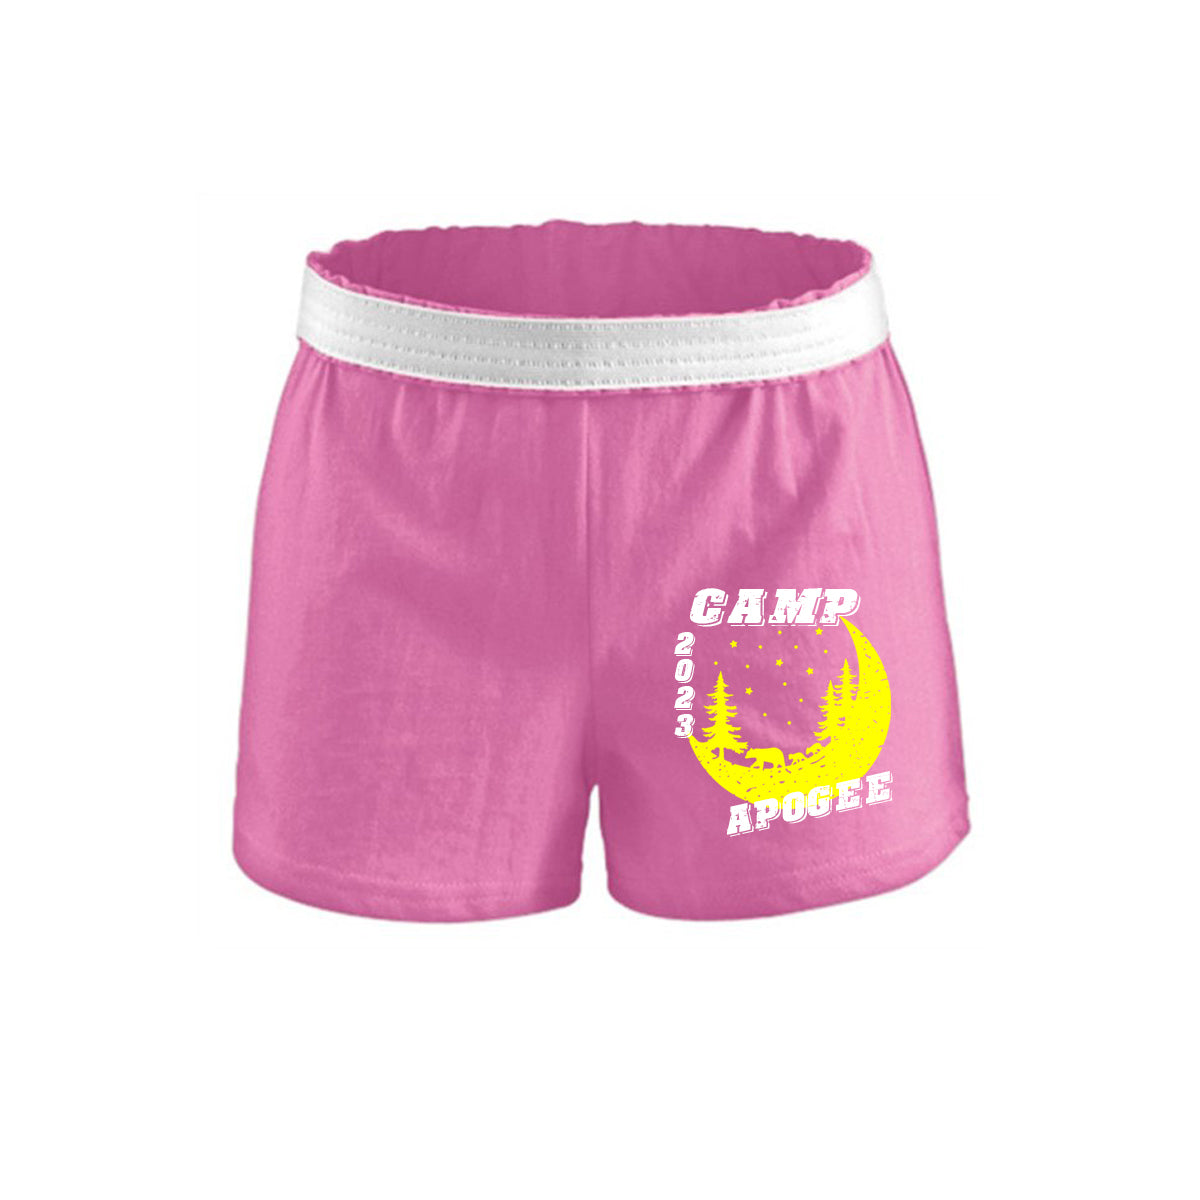 Hilltop Camp Design 1 Girls Shorts